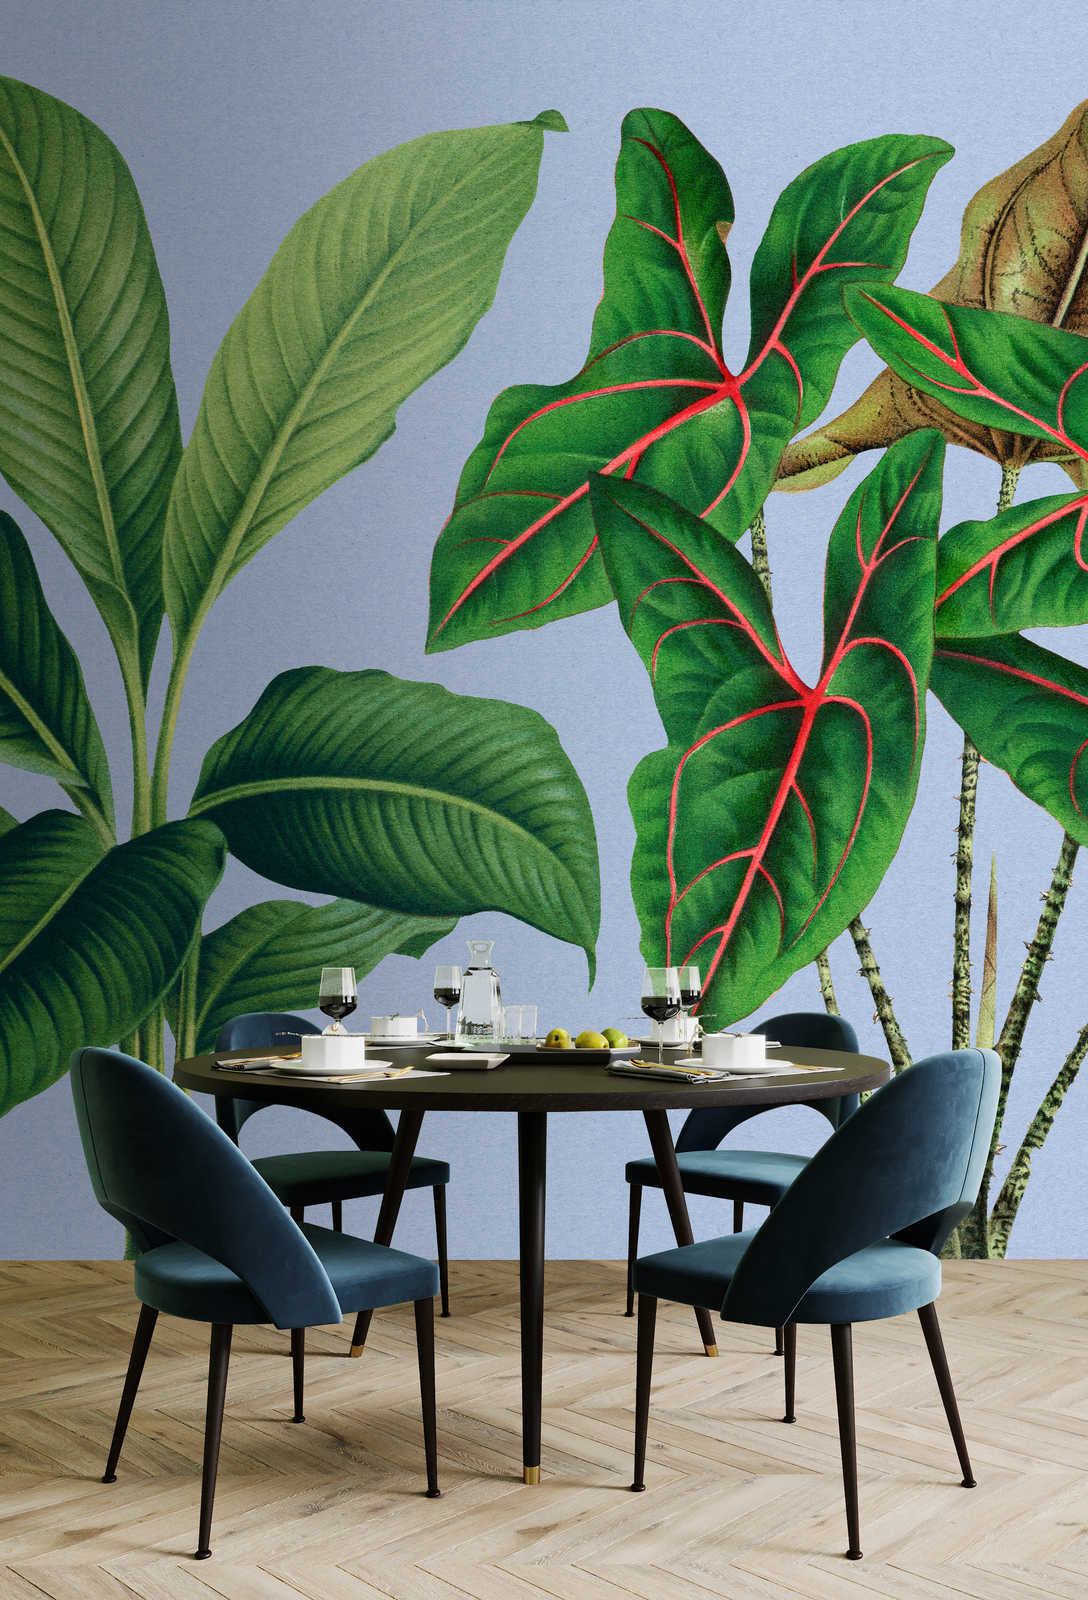             Jardín de hojas 1 - Hojas de papel pintado de fotos azul con plantas tropicales
        